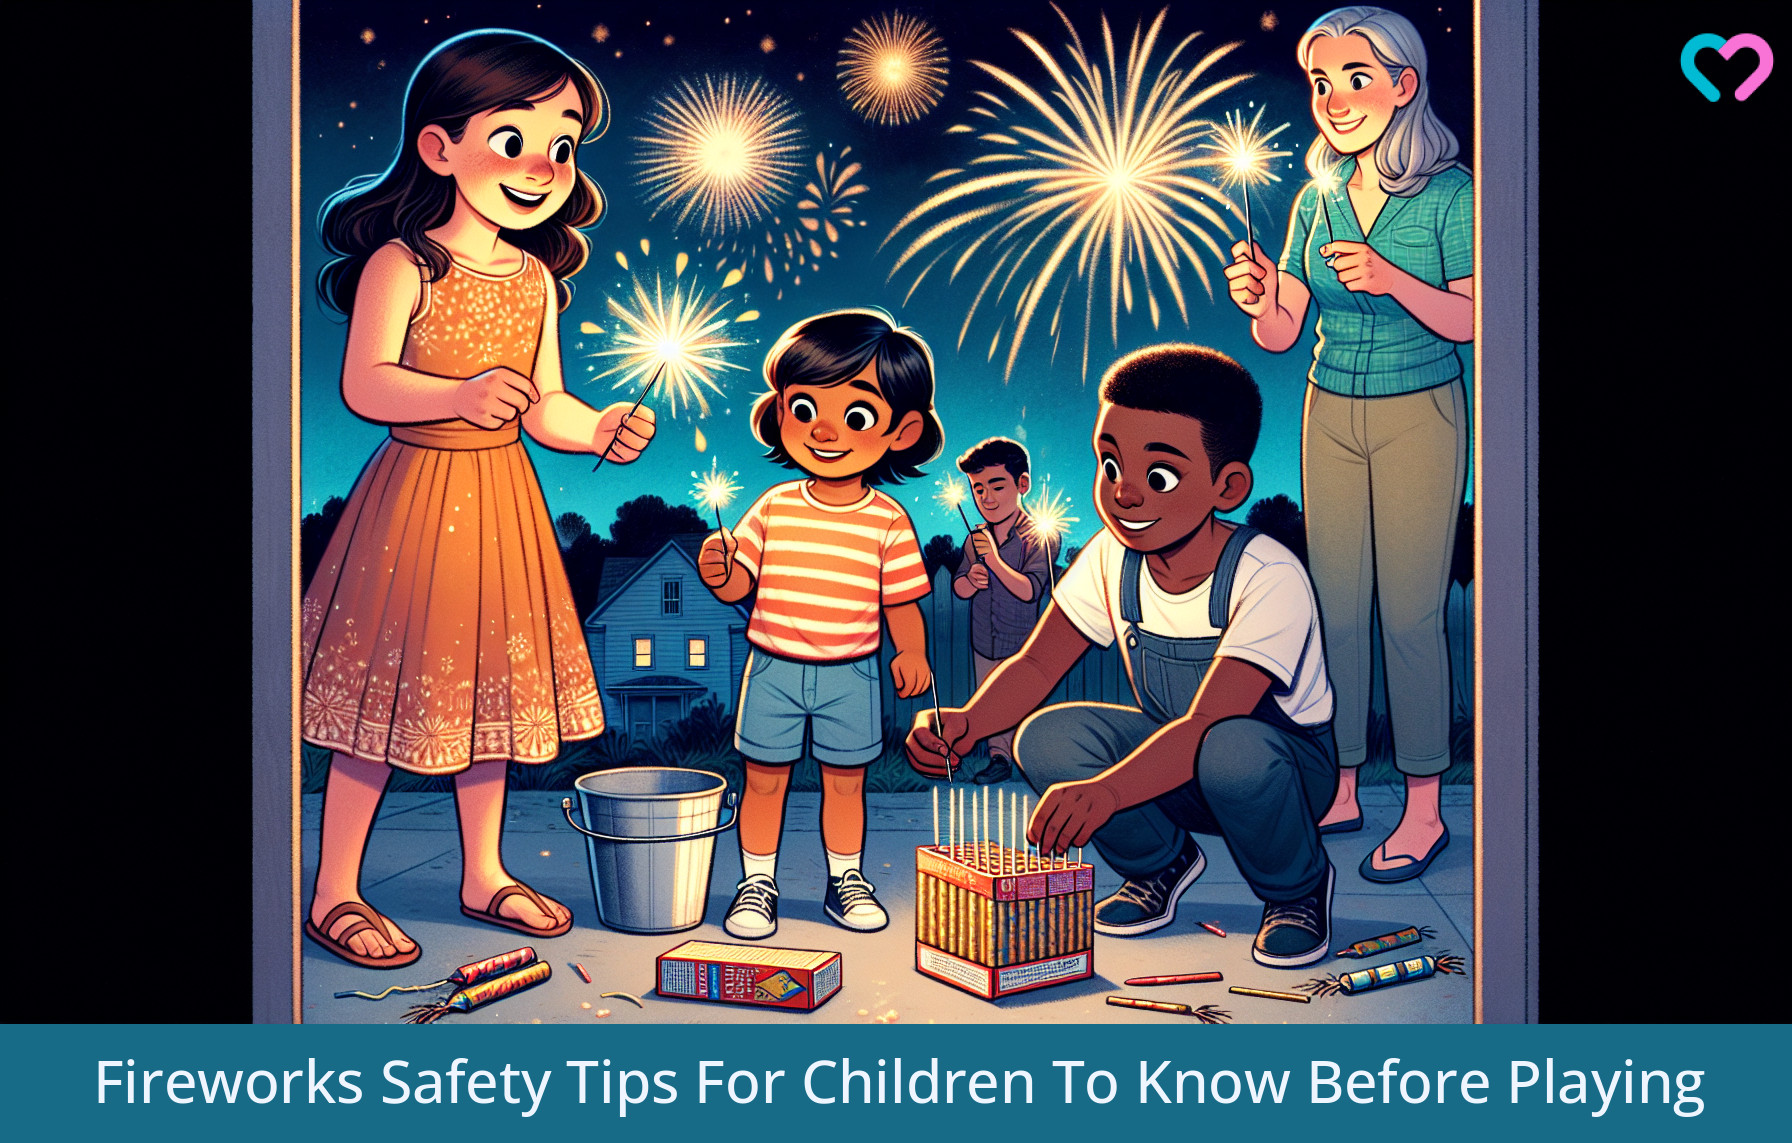 Fireworks Safety For Kids_illustration